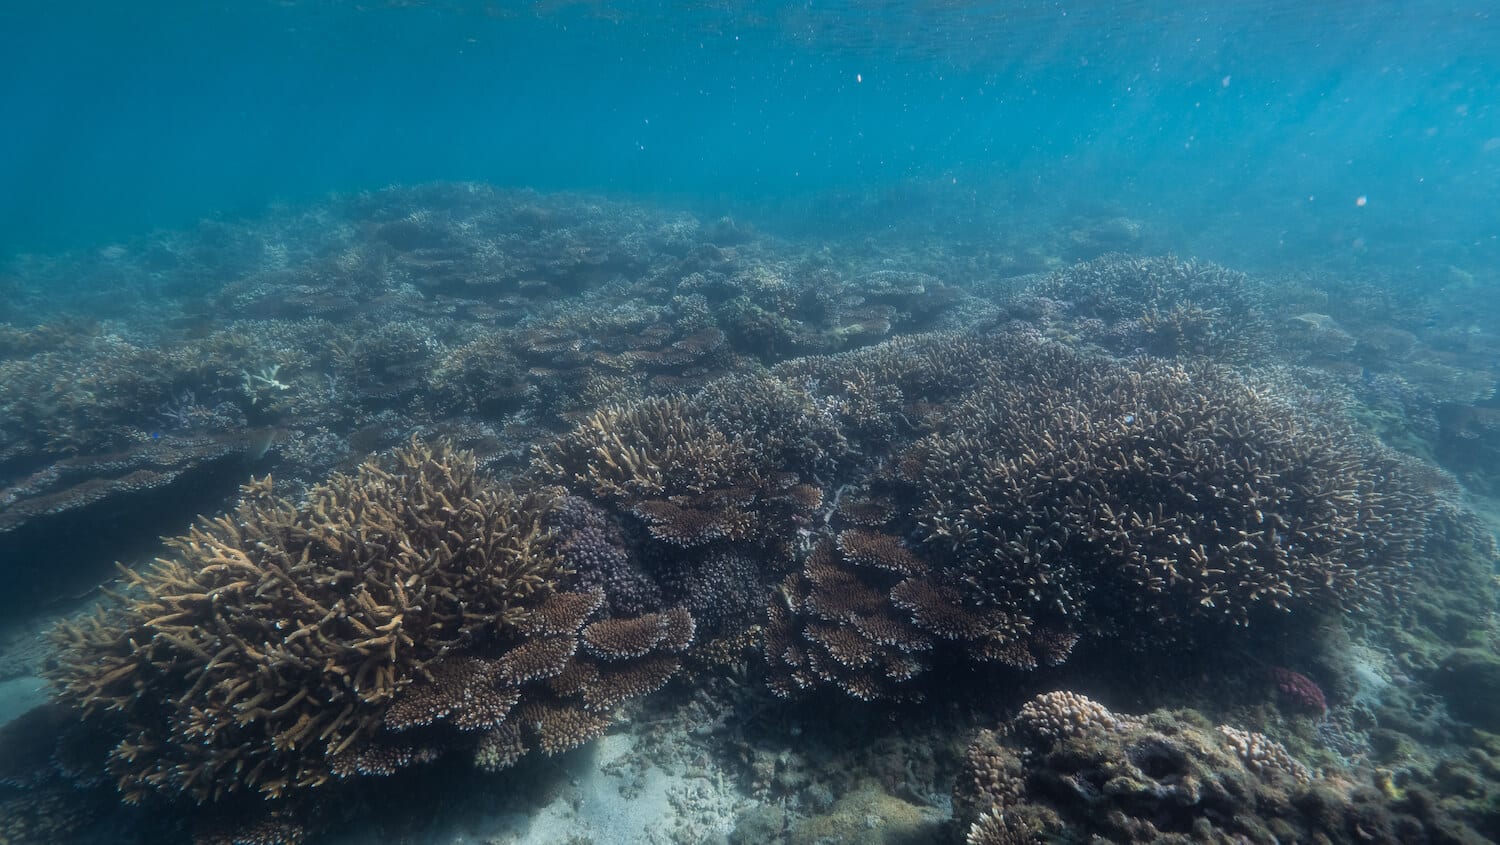 澎湖種苗場珊瑚復育6 用珊瑚妝點菊島海漾，你也可以是「珊瑚花藝師」-海洋保育之珊瑚復育體驗行程